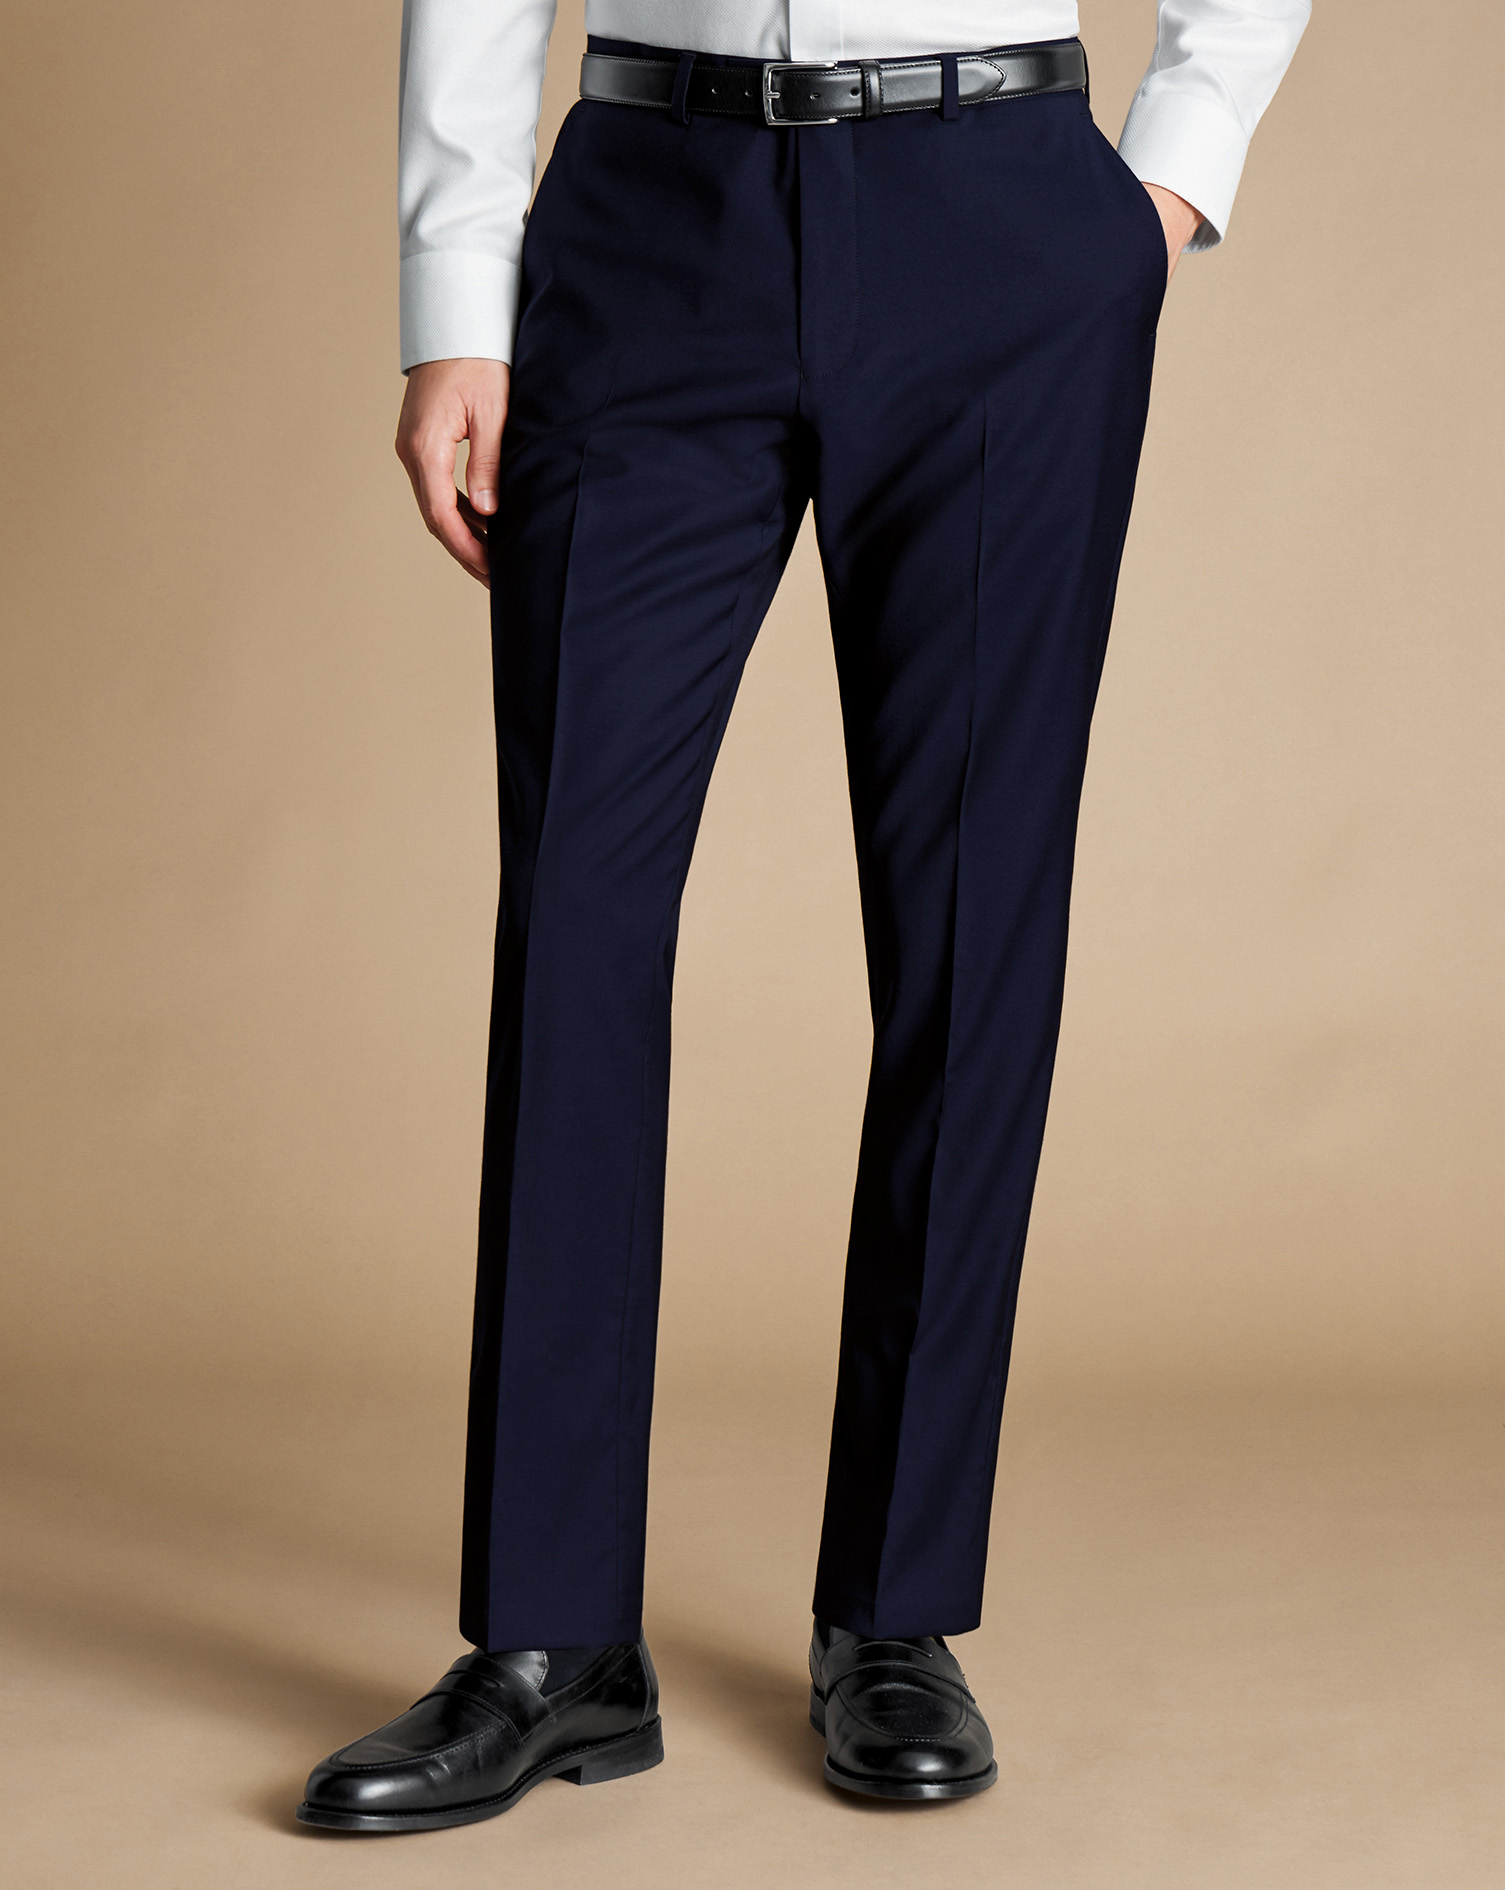 Men's Charles Tyrwhitt Italian Suit Trousers - Dark Navy Size 40/38
